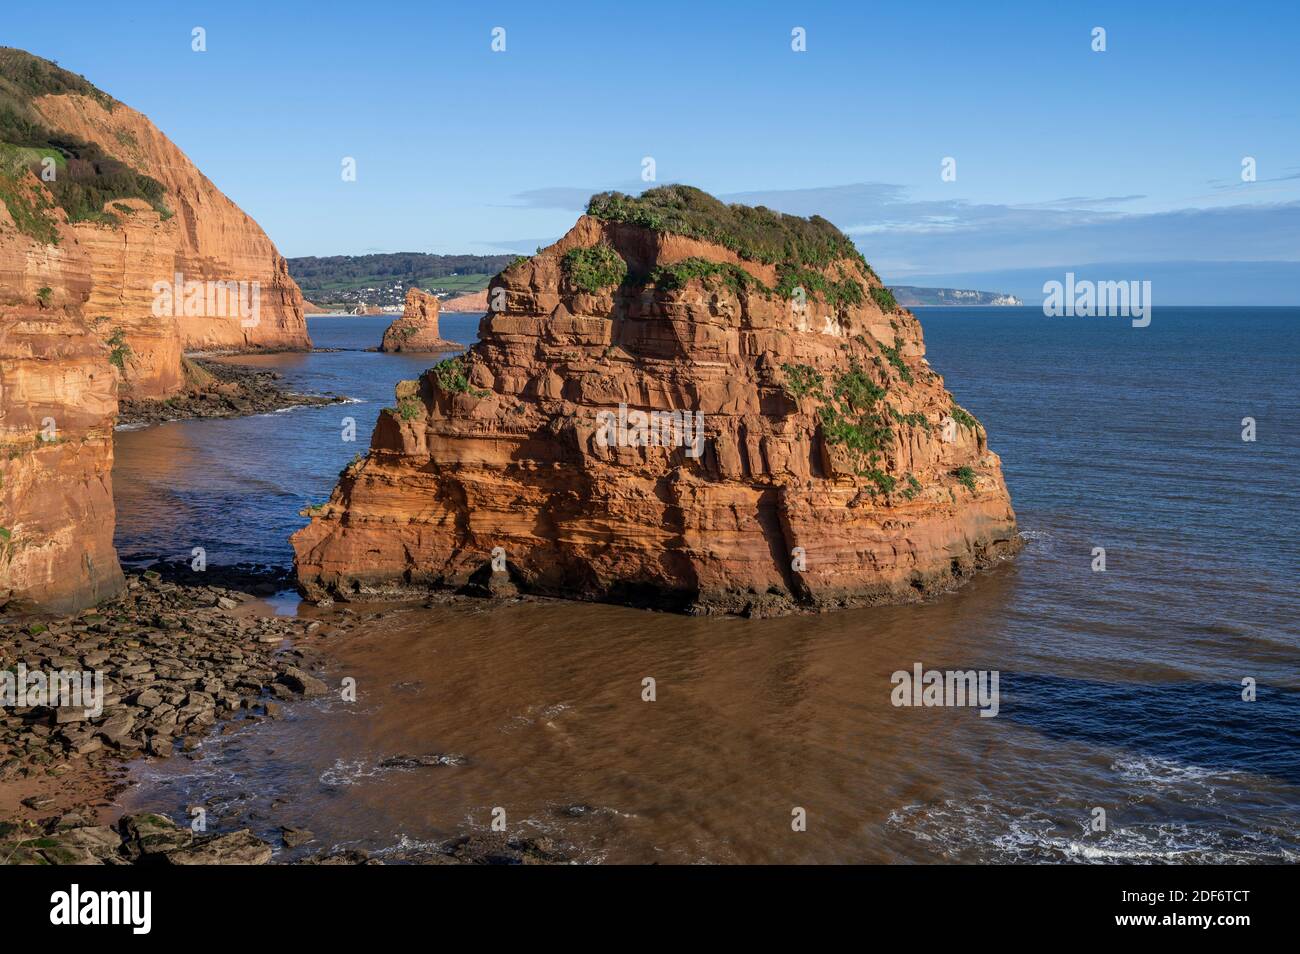 Ladram Bay Rocks in Devon in England Stock Photo